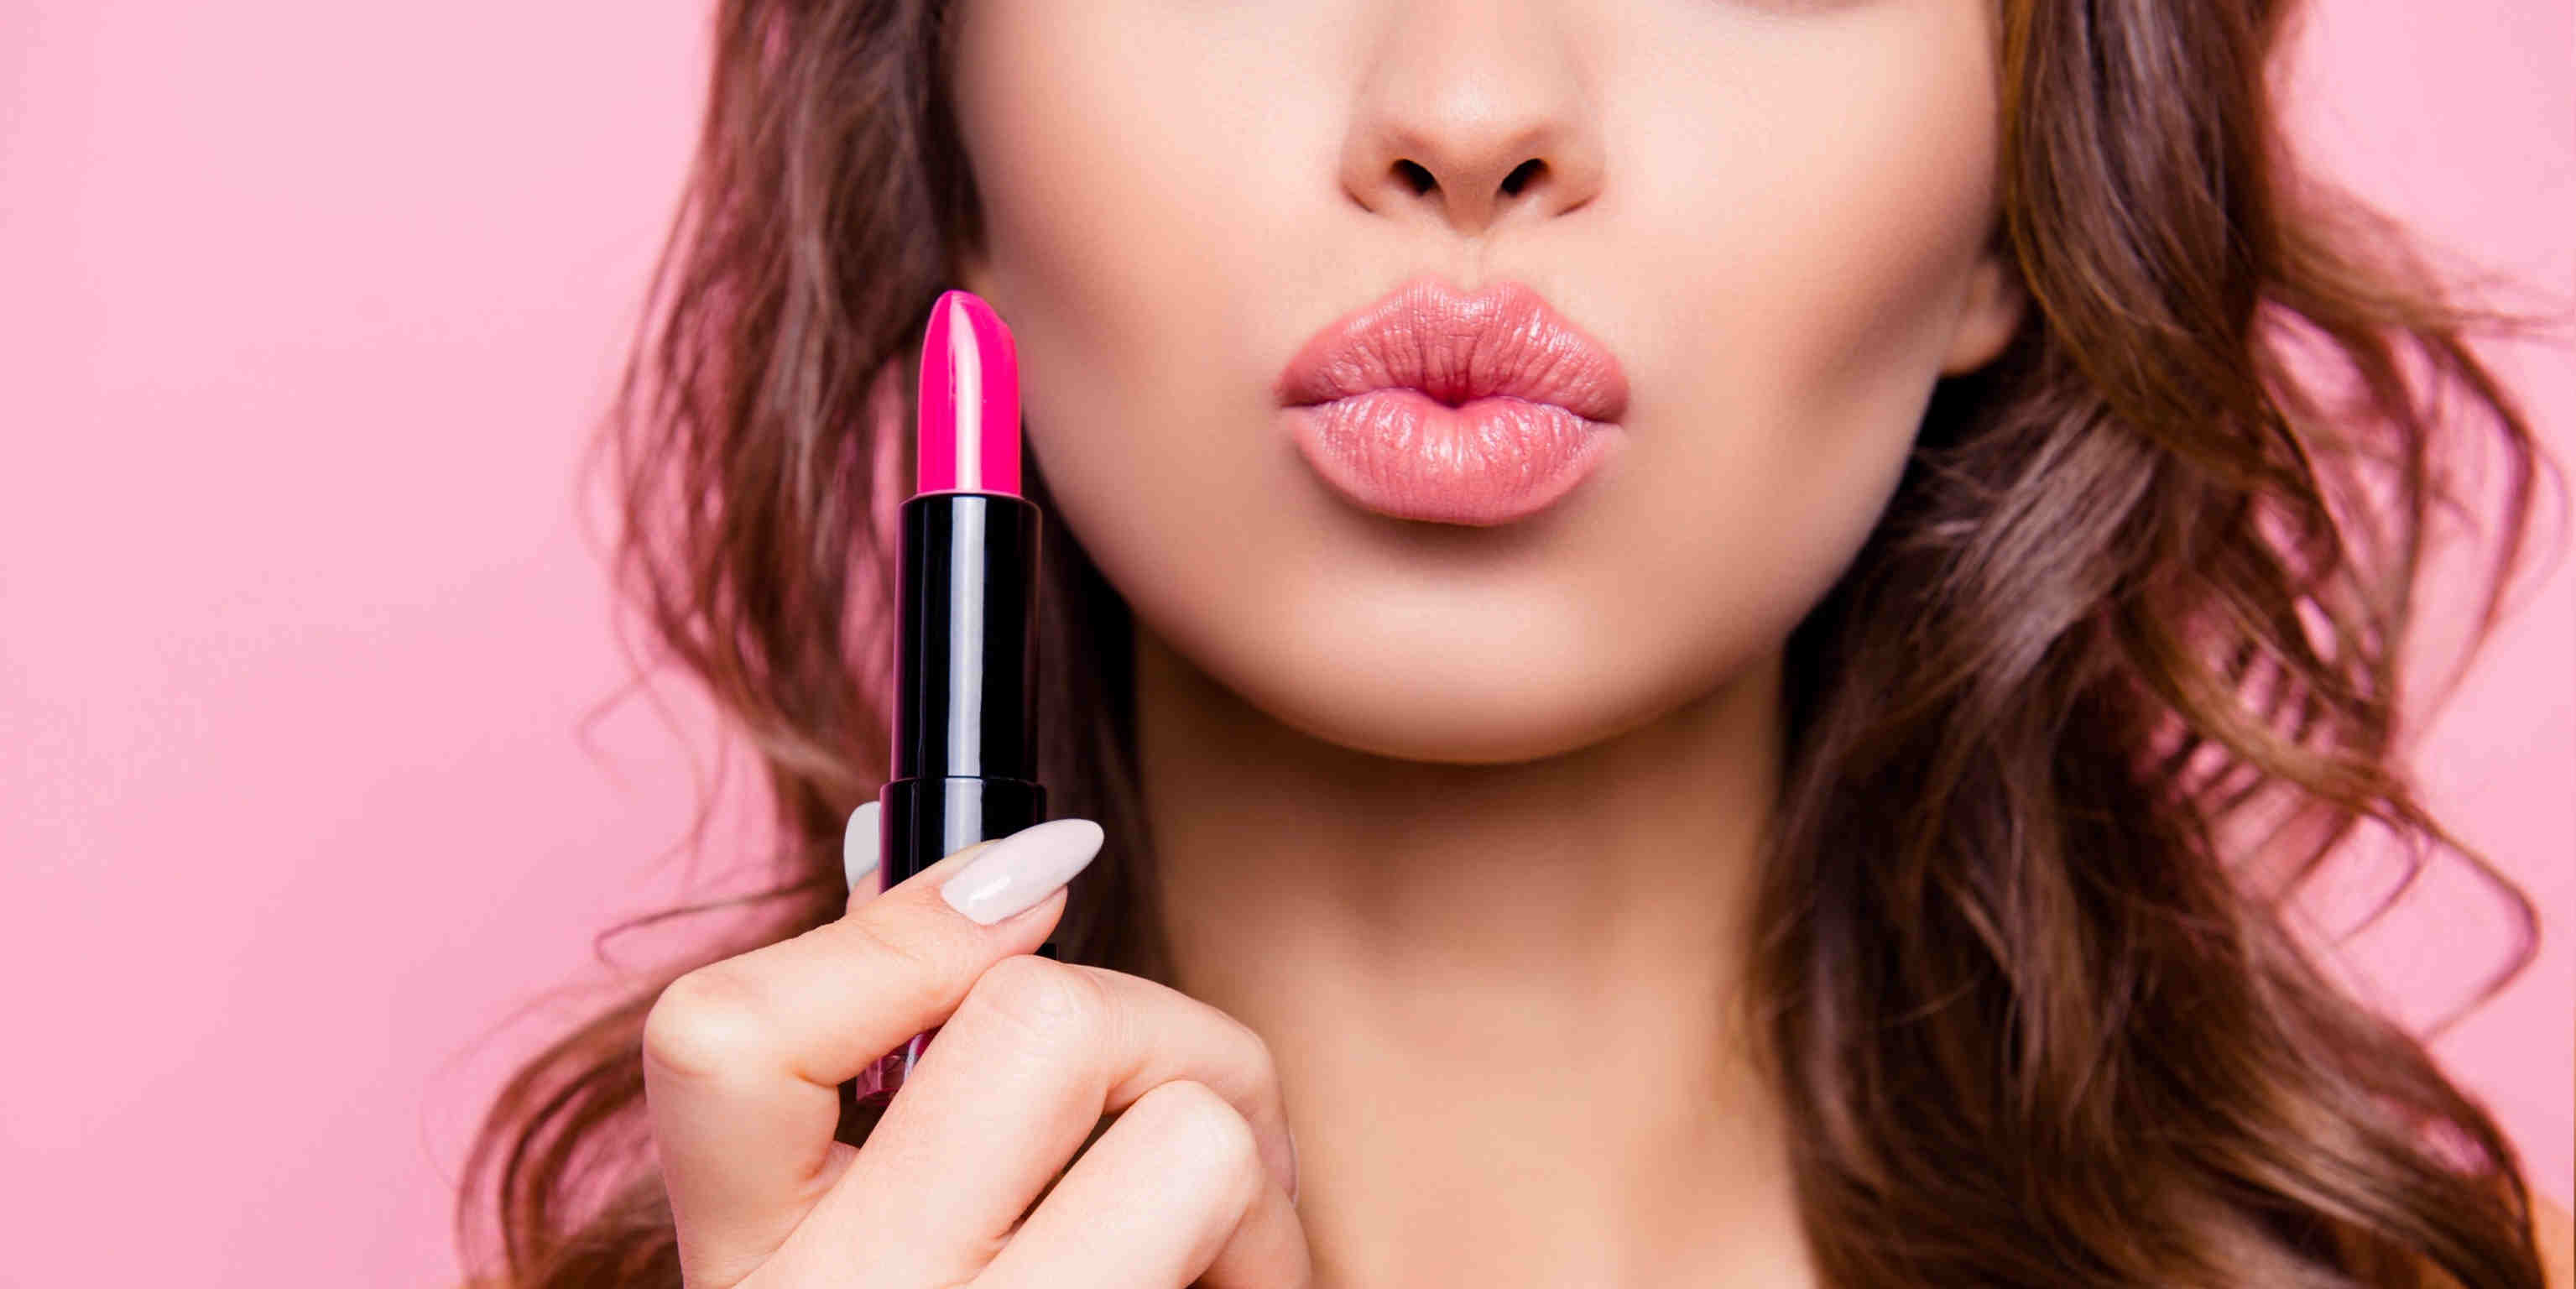 Multifungsi! 6 Kegunaan Lain Lipstik Yang Bisa Kamu Coba!